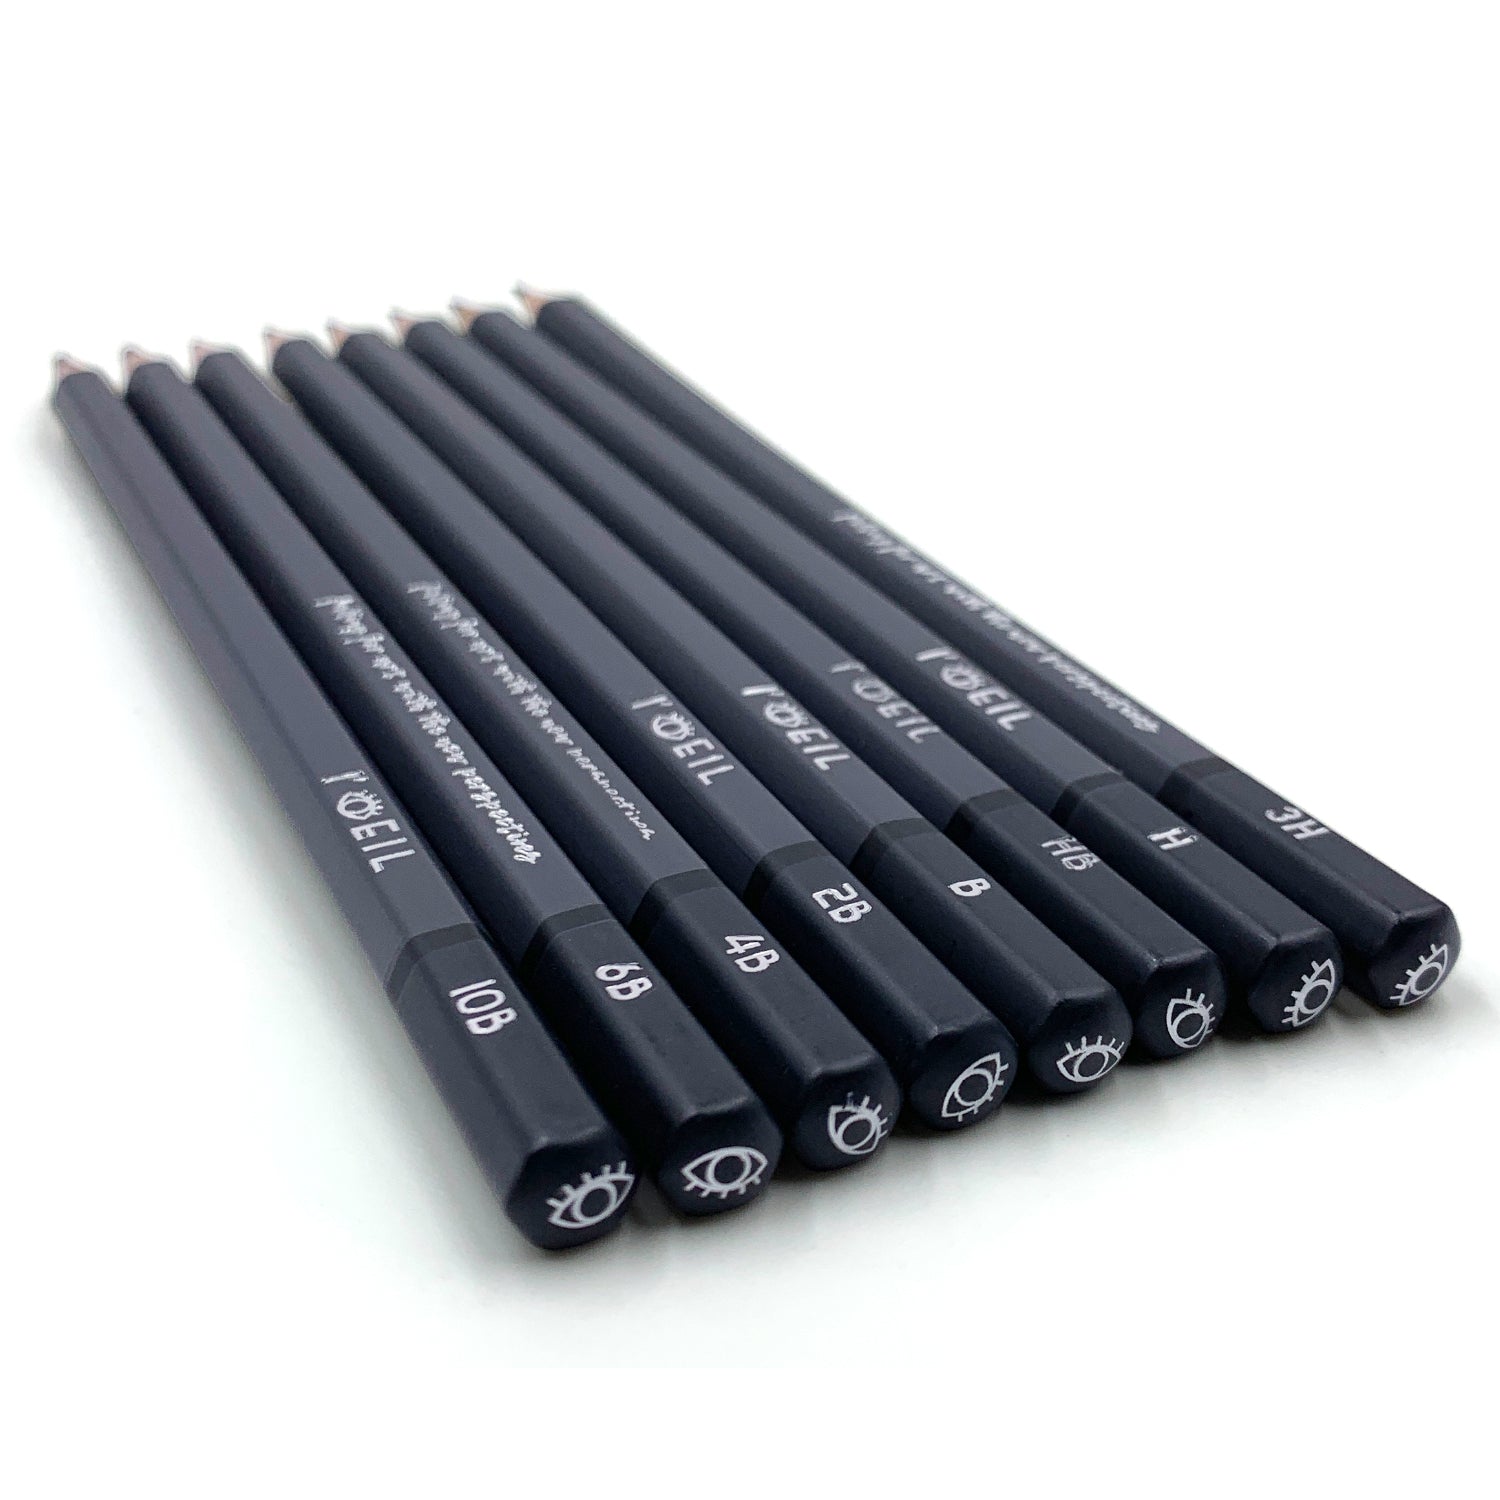 Dark Grey and Black Pencil Set Grey and Black Pencils HB Pencil